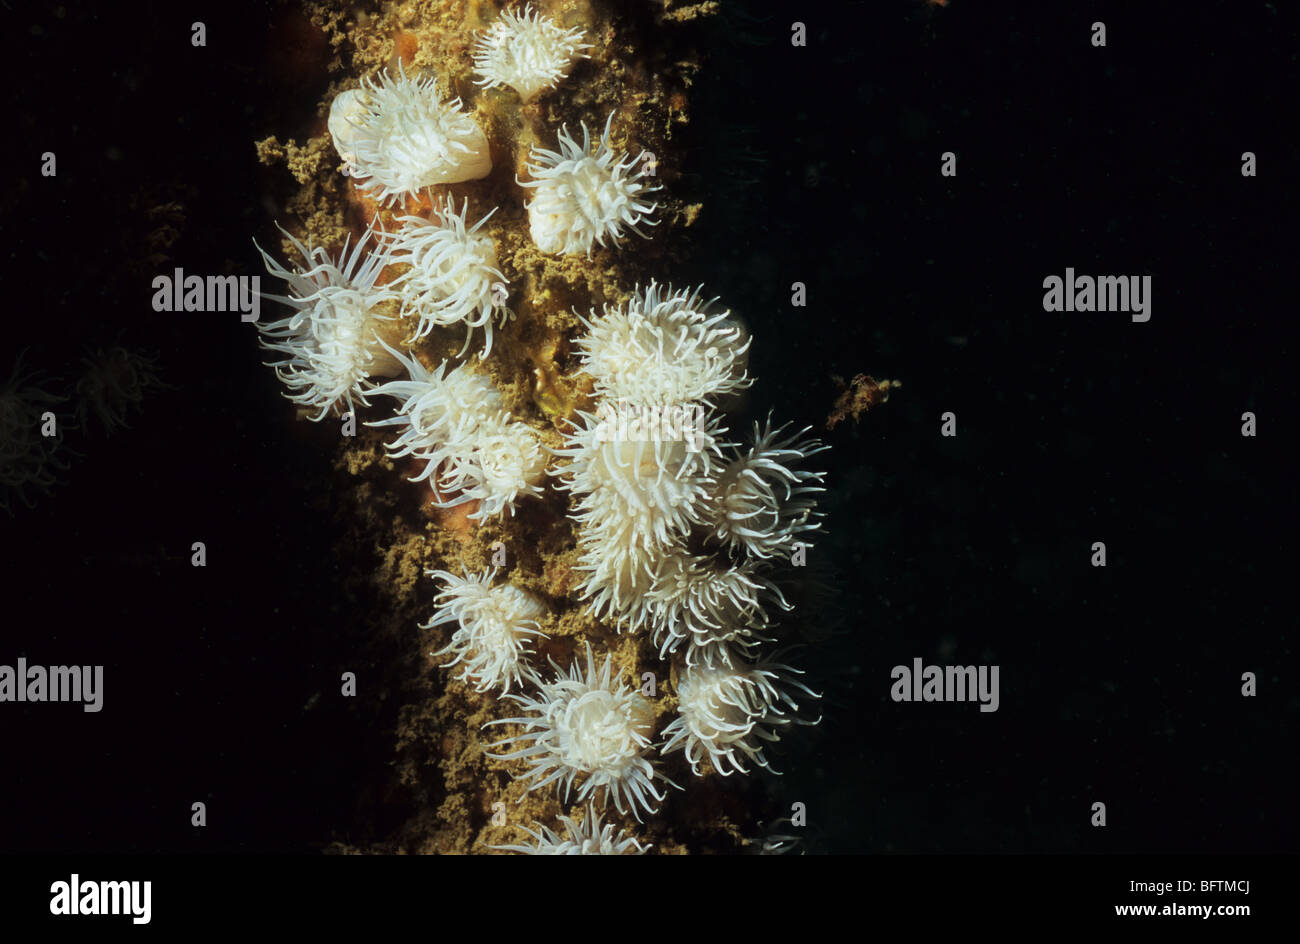 Seeanemone. Actinothoe Sphyrodeta.  Nesseltieren. Schöne Anemone, gefunden an der Südküste des Vereinigten Königreichs. Tauchen Tourismus, Scuba UK Stockfoto